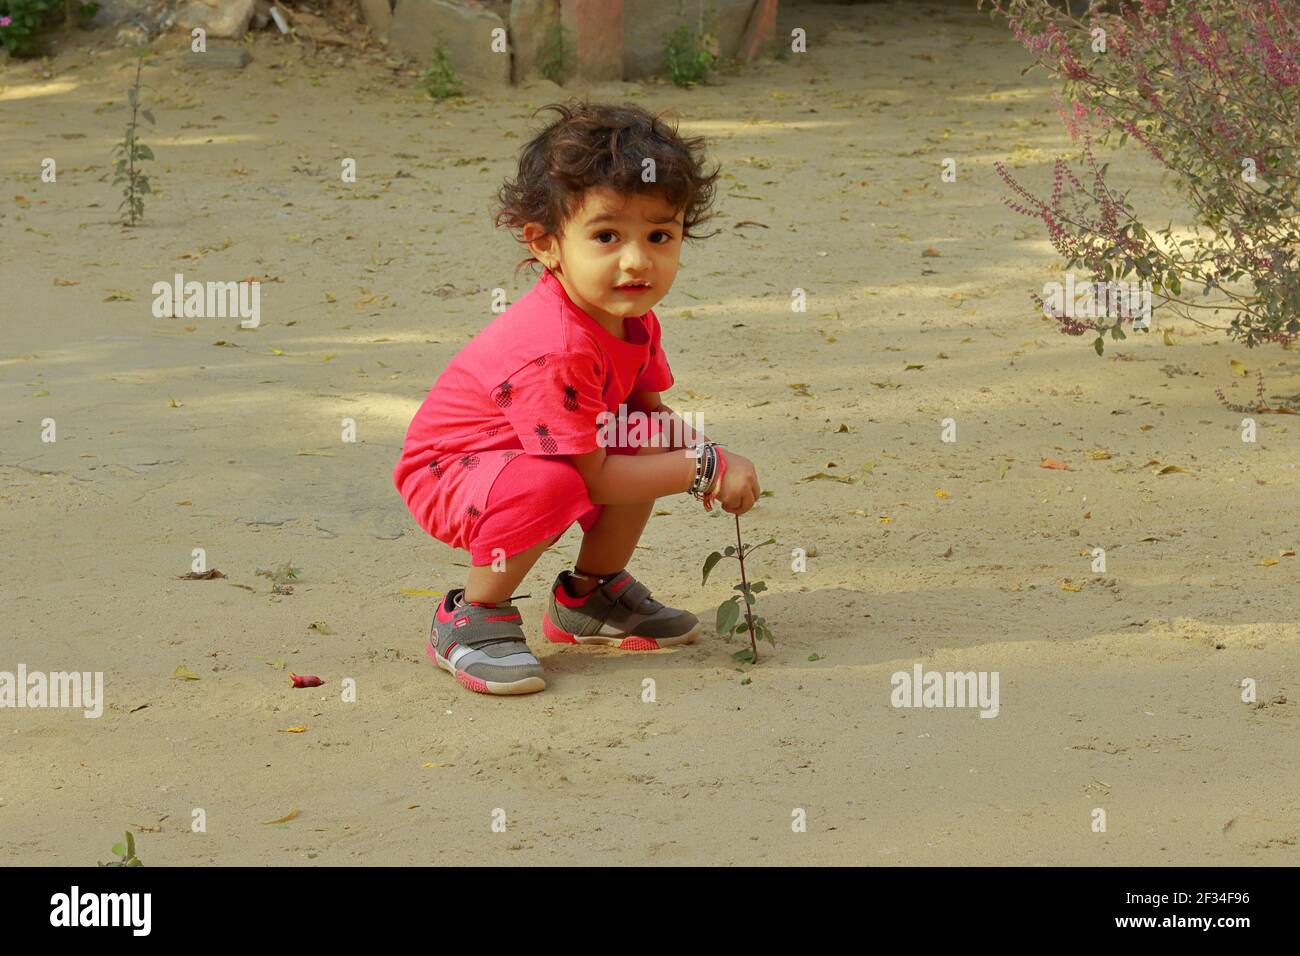 Ein kleiner Junge indischer Herkunft bricht das Blatt der ayurvedischen Medizinpflanze Tulsi, indien.Konzept für Kinderfreuden, Kindheitserinnerungen, Babygesicht Stockfoto